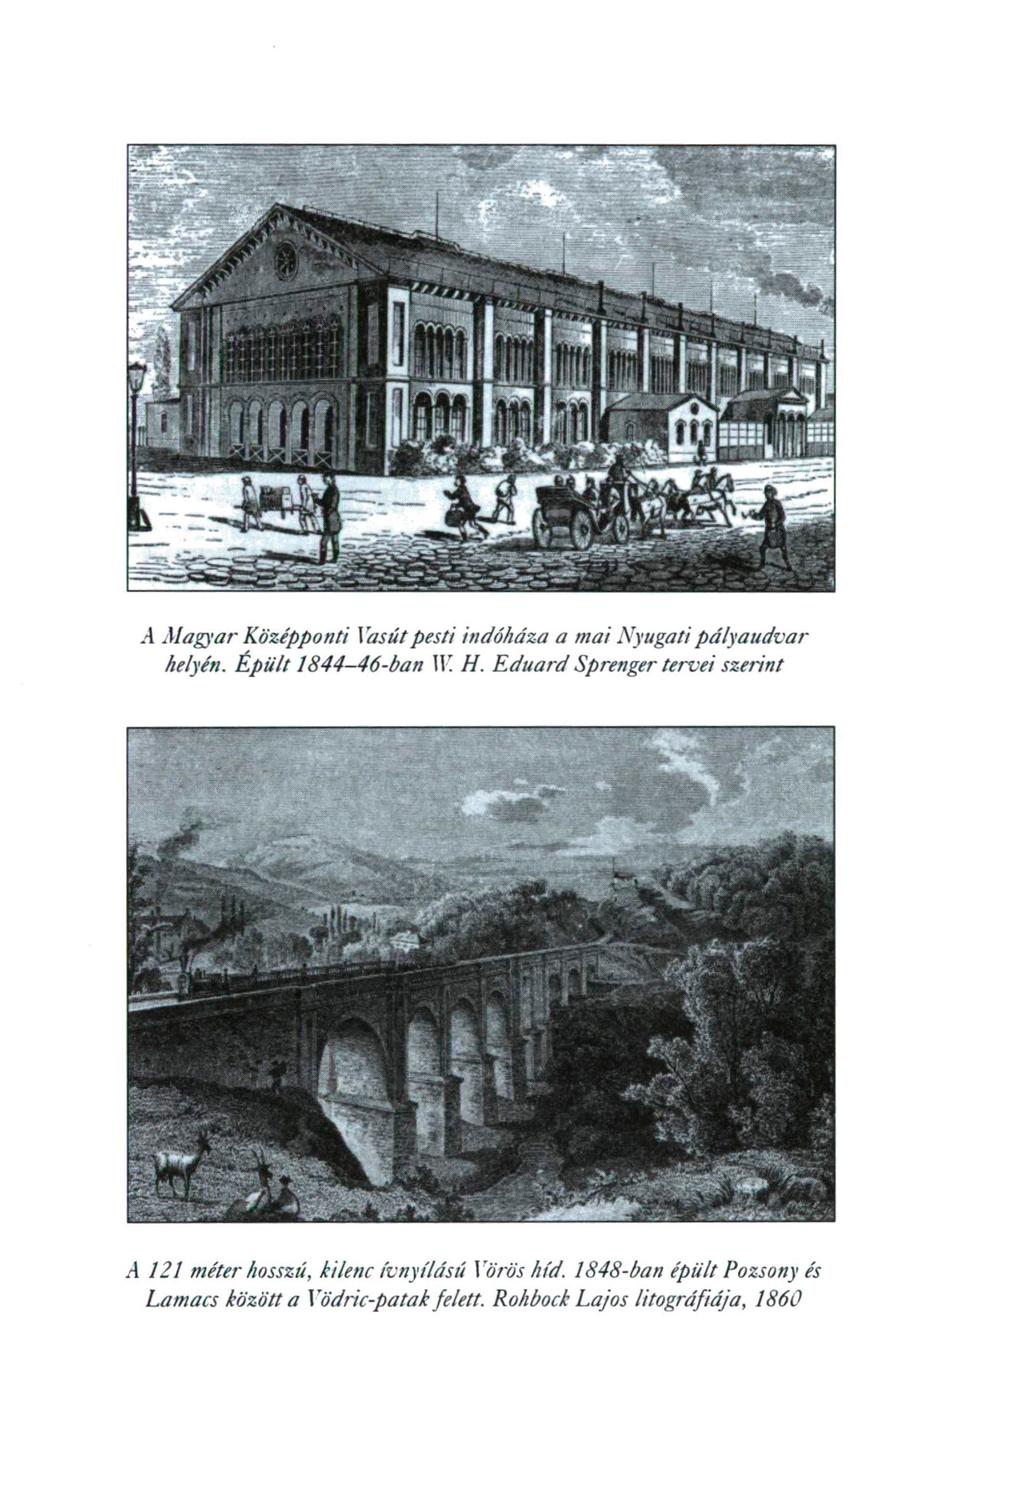 .4 Magyar Középponti Vasút pesti indóháza a mai Nyugati pályaudvar helyén. Épült 1844-46-ban II! H. Eduárd Sprenger tervei szerint.